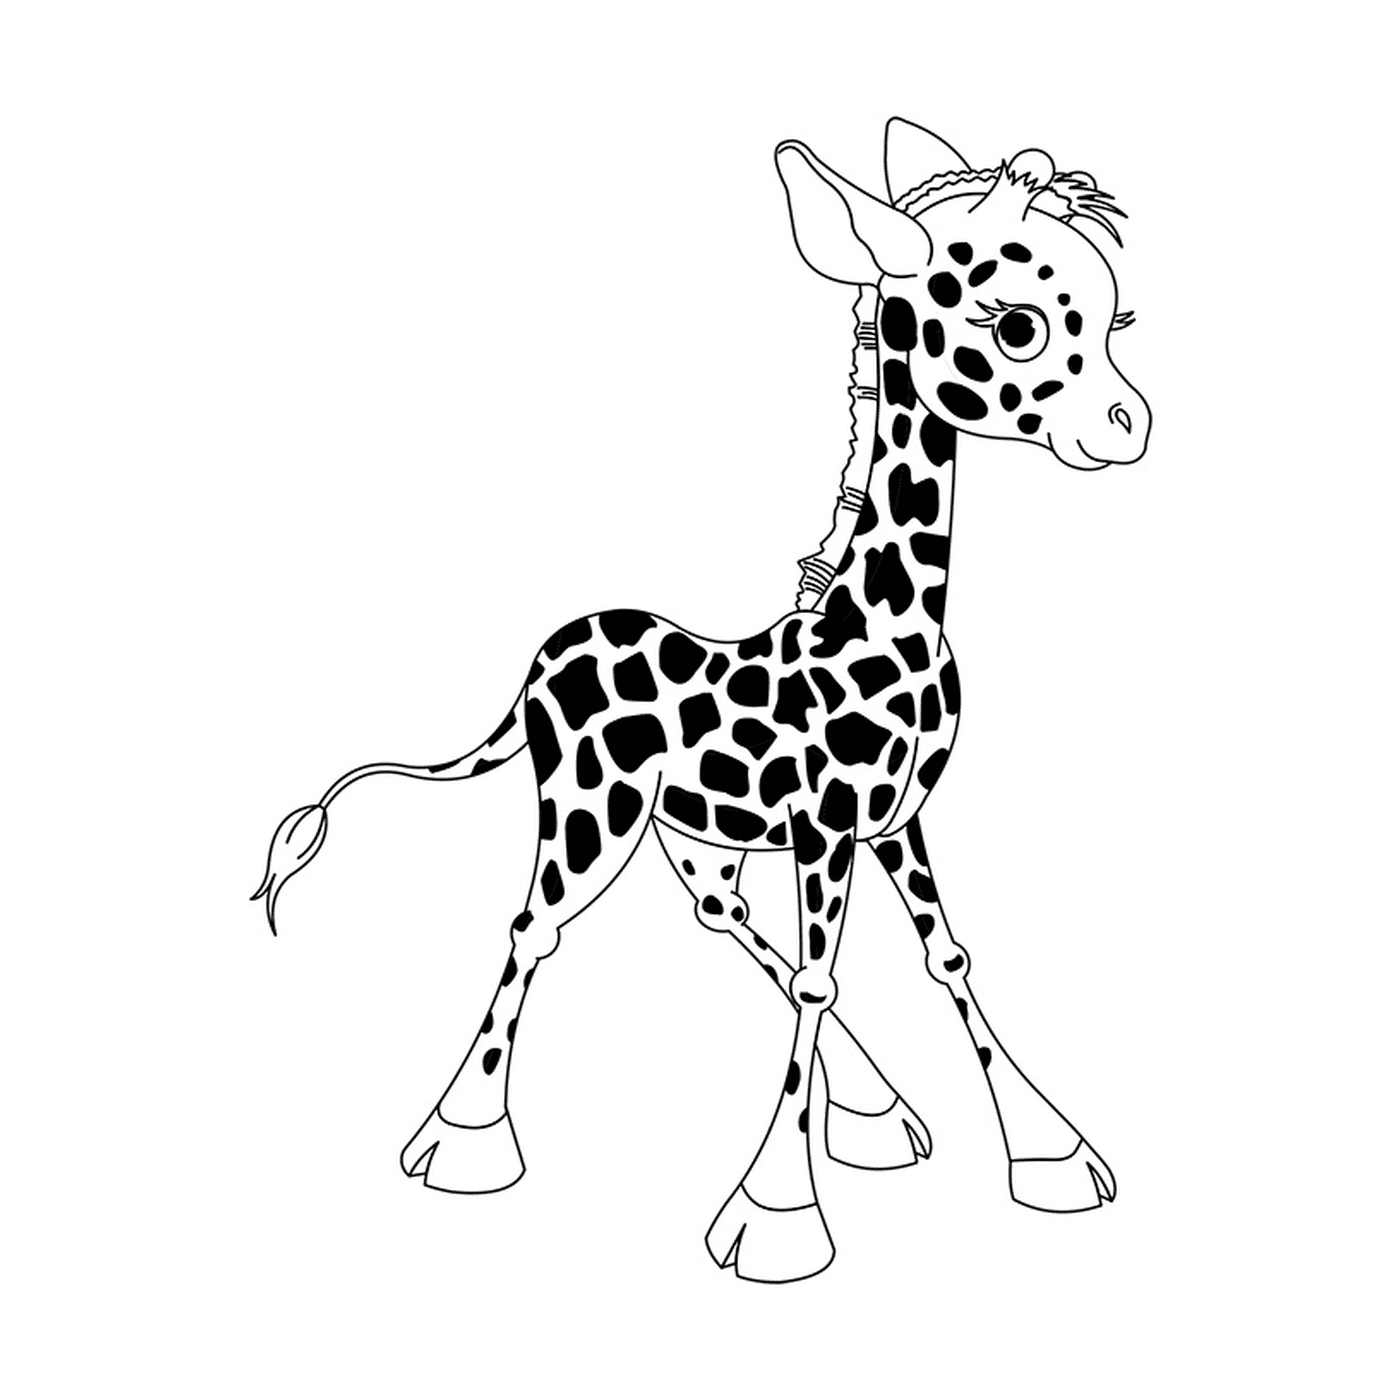   Une girafe bébé debout 